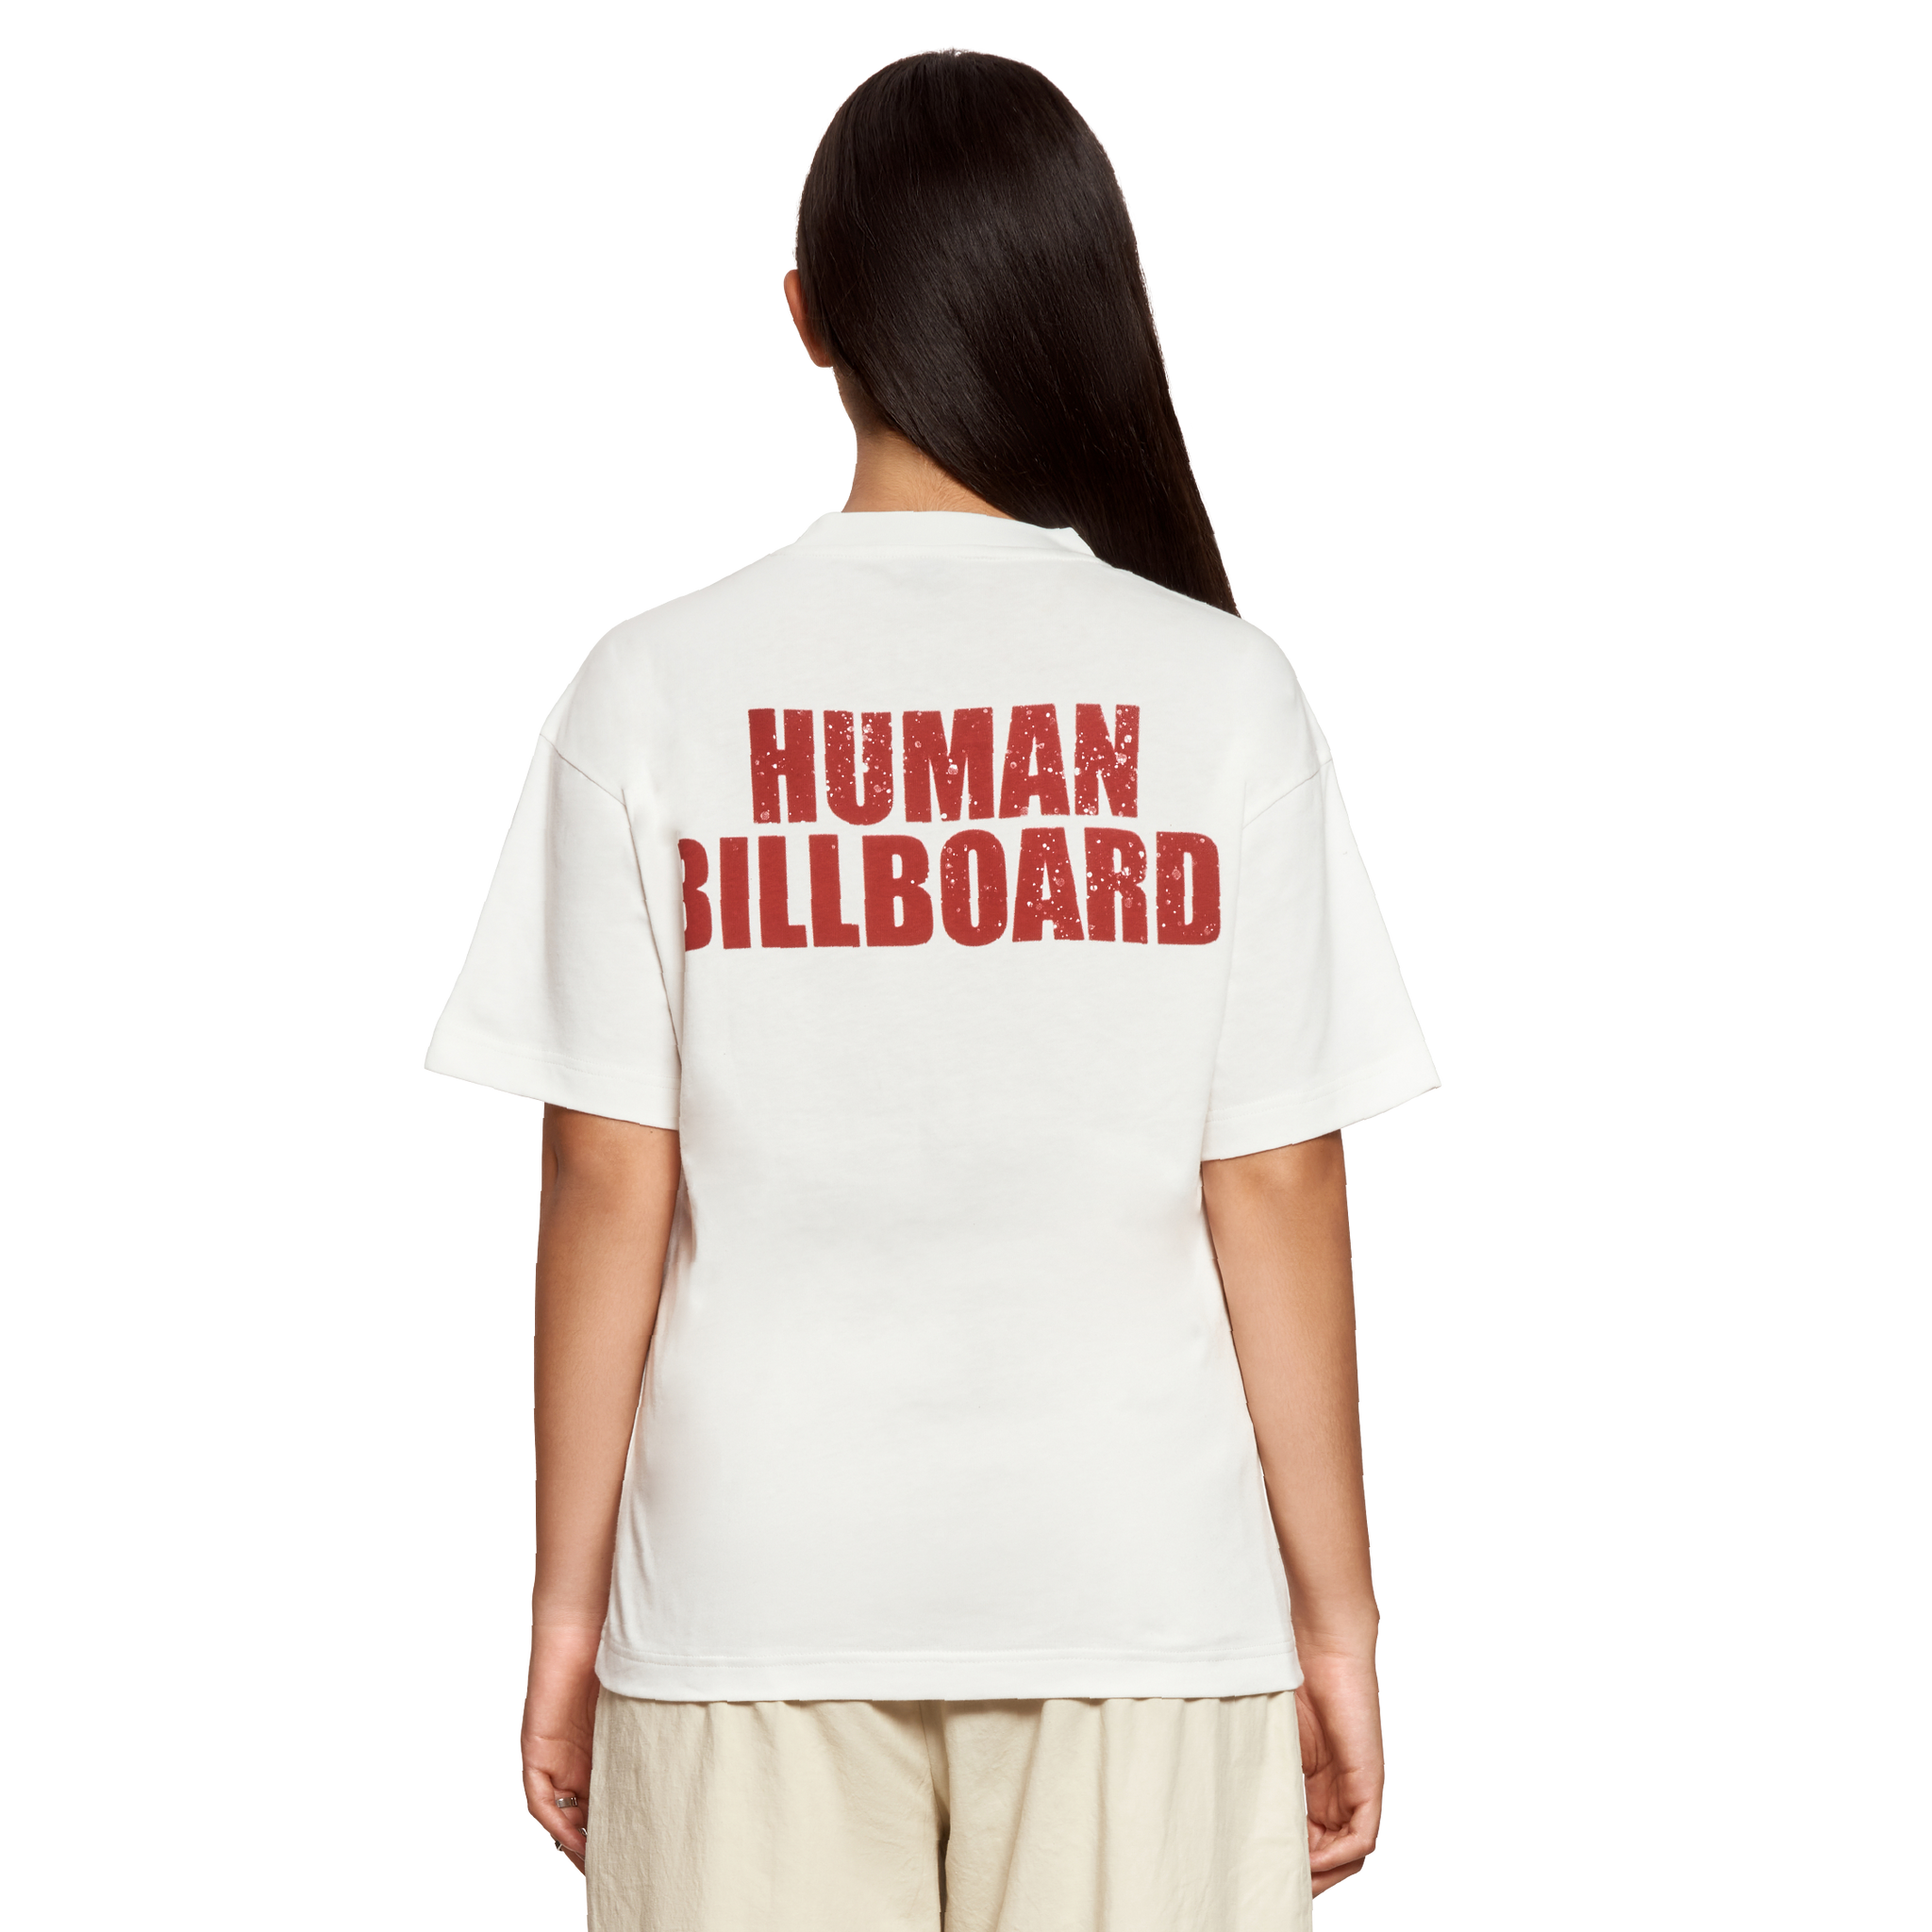 T-SHIRT HUMMAN BILLbOARD - BLANC 